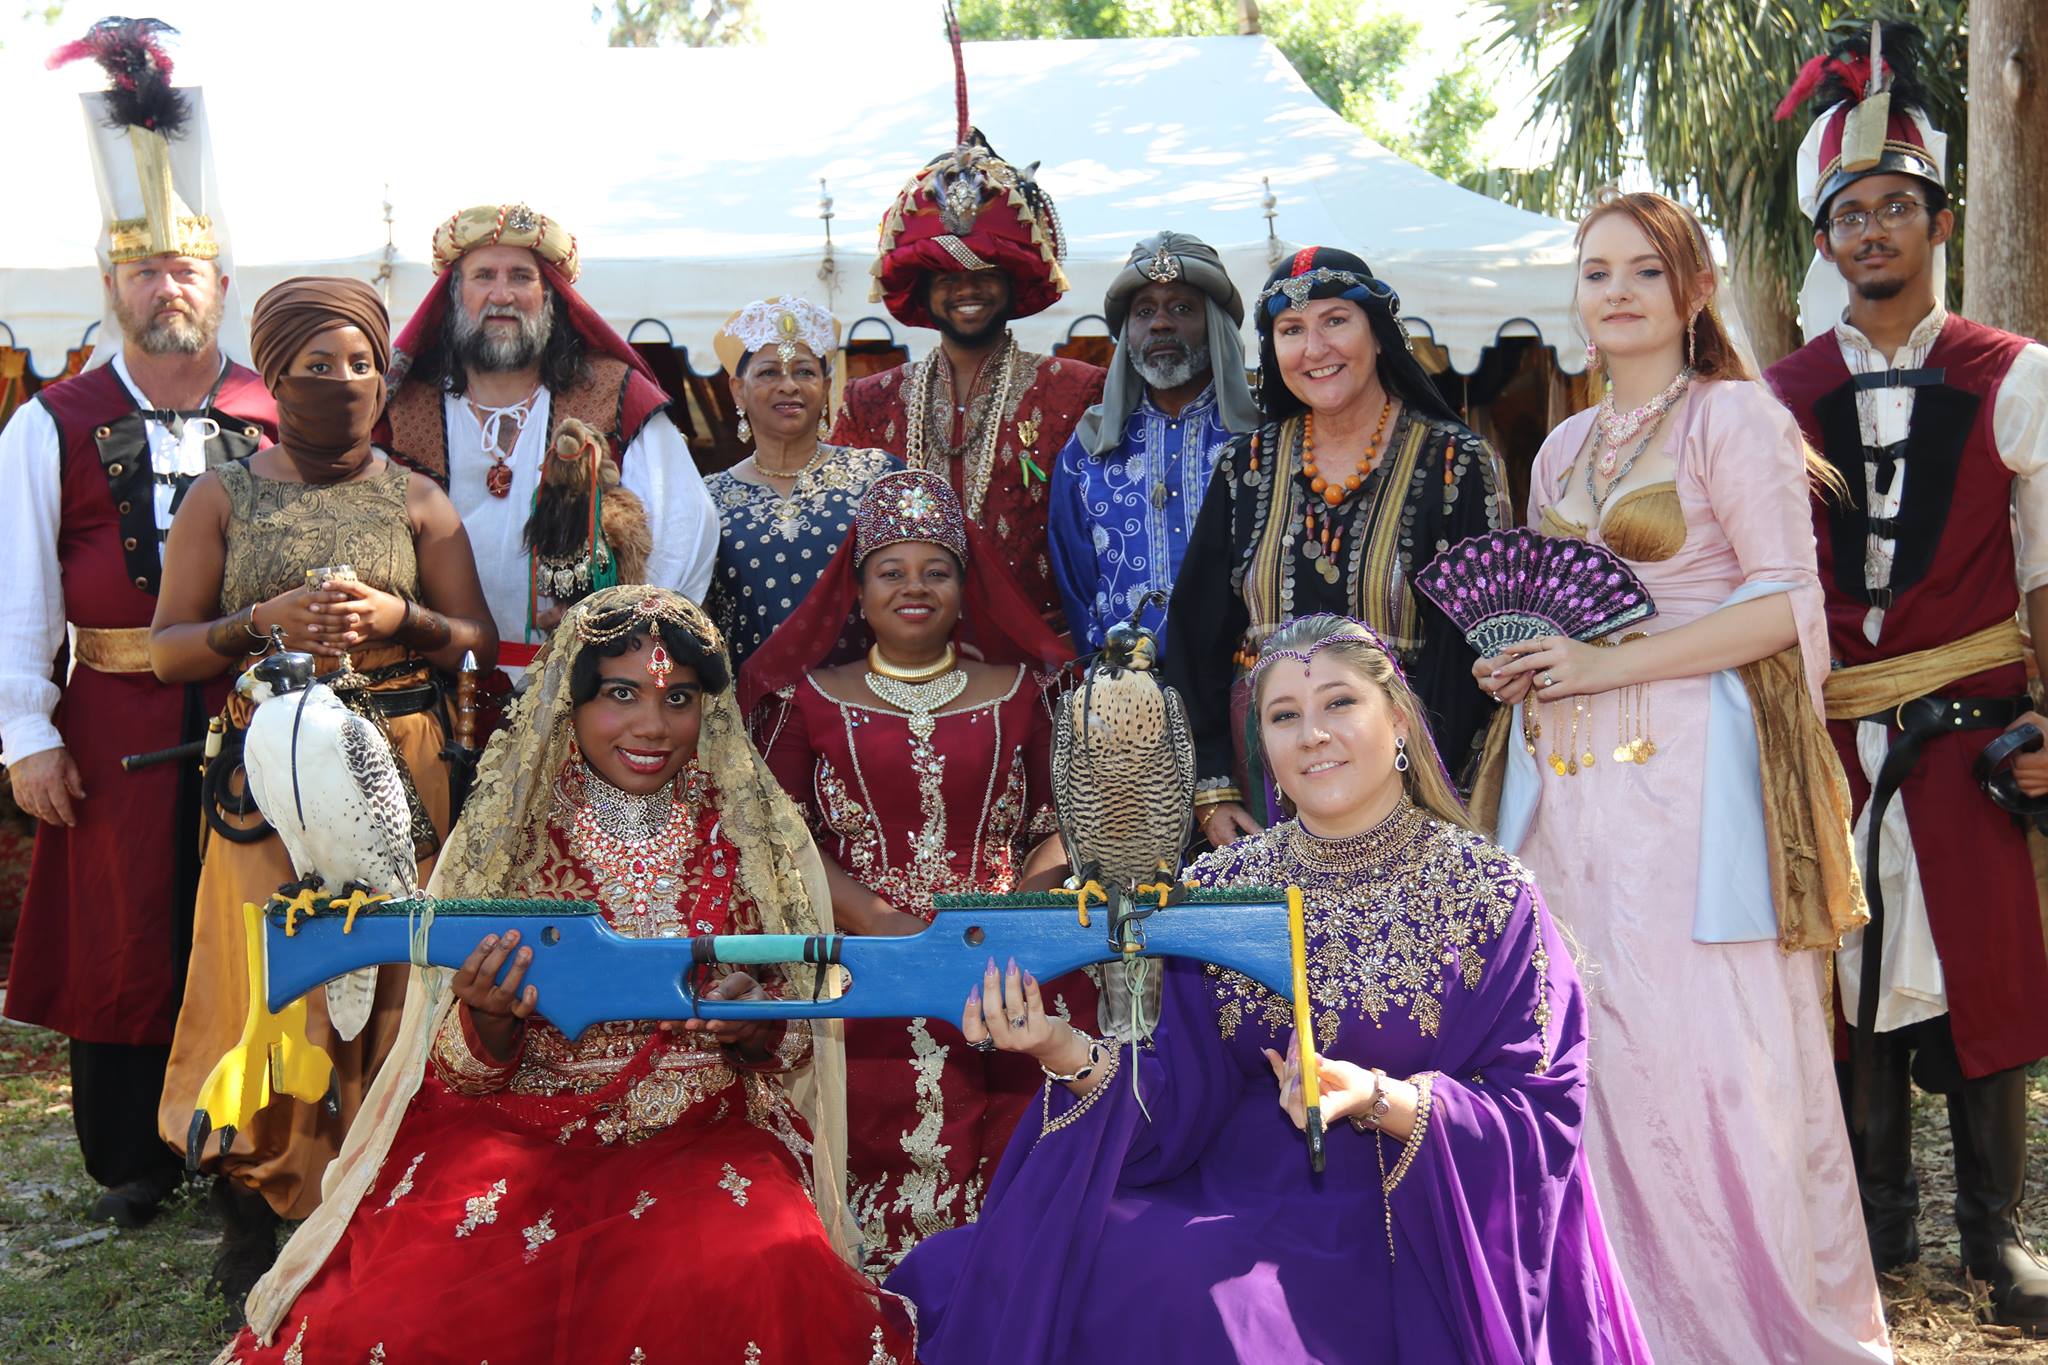 Florida Renaissance Festival começa neste sábado (9) em Deerfield Beach